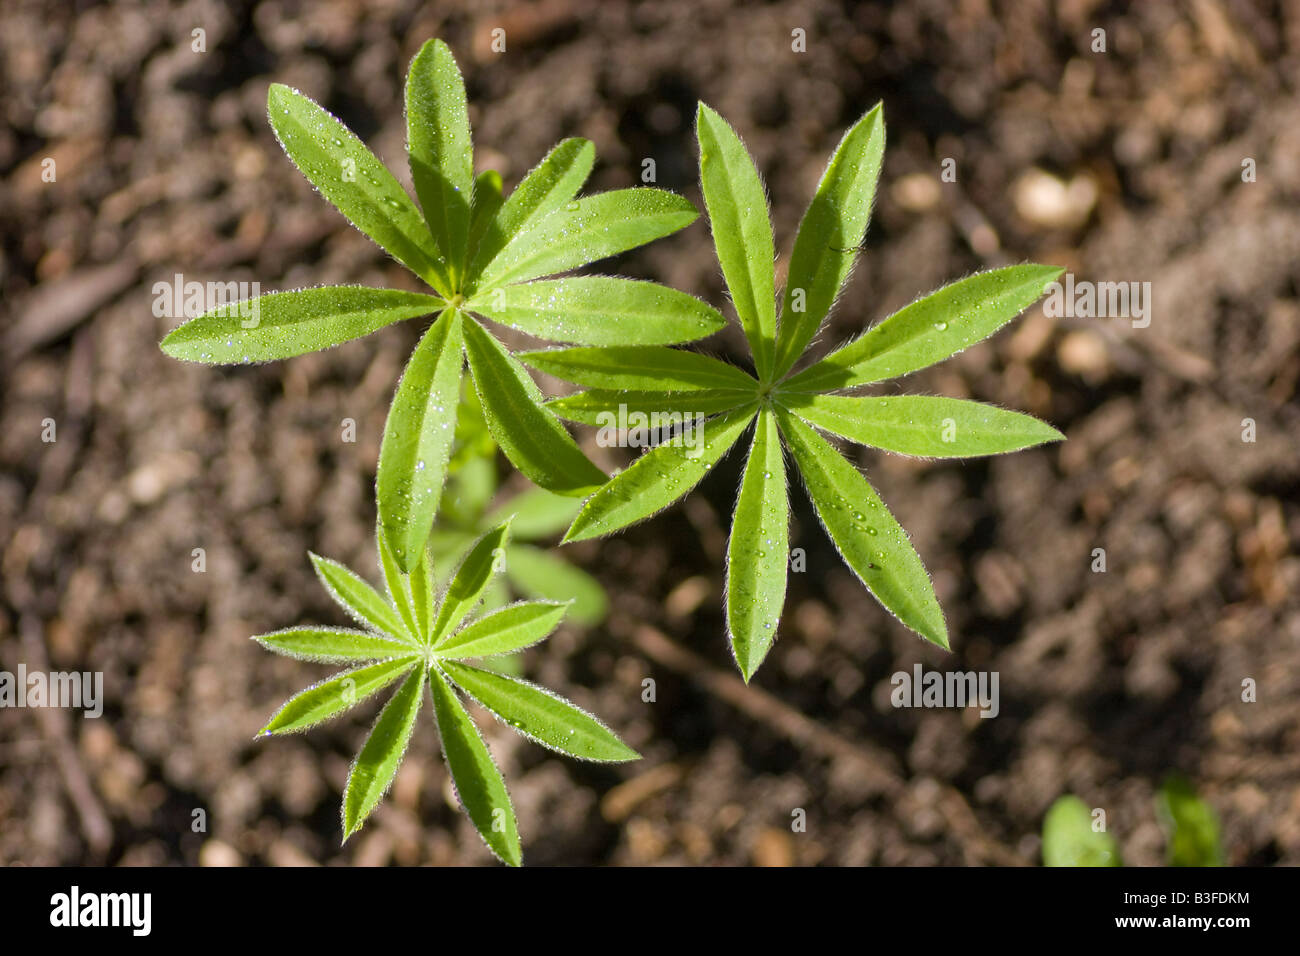 Die Sämlinge der Pflanze Lupine Lupinen Stickstoff aus der Atmosphäre in  Ammoniak düngen den Boden für andere Pflanzen beheben können  Stockfotografie - Alamy